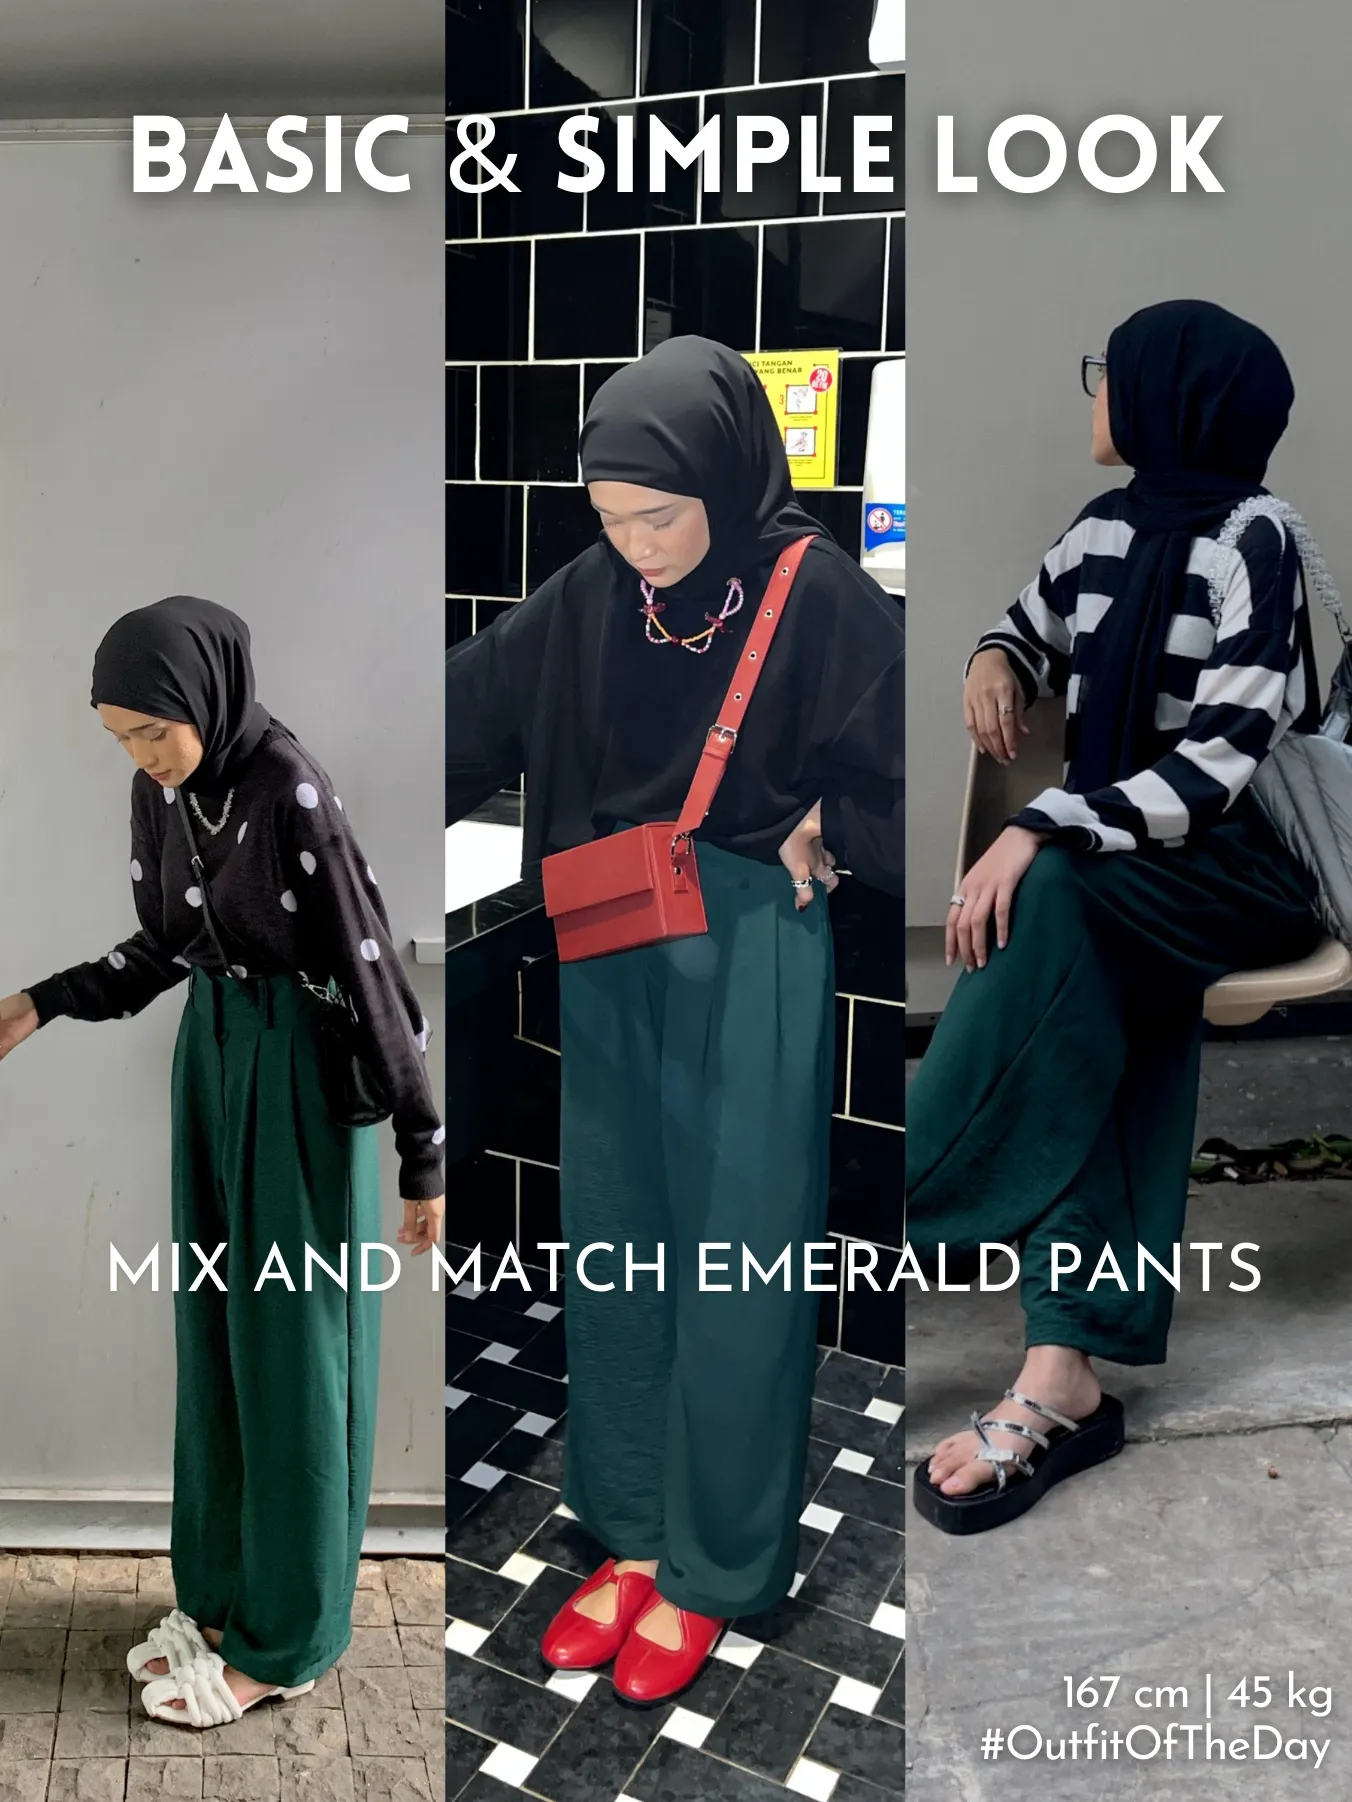 Kimi Basic Long Pants - Navy – Buttonscarves